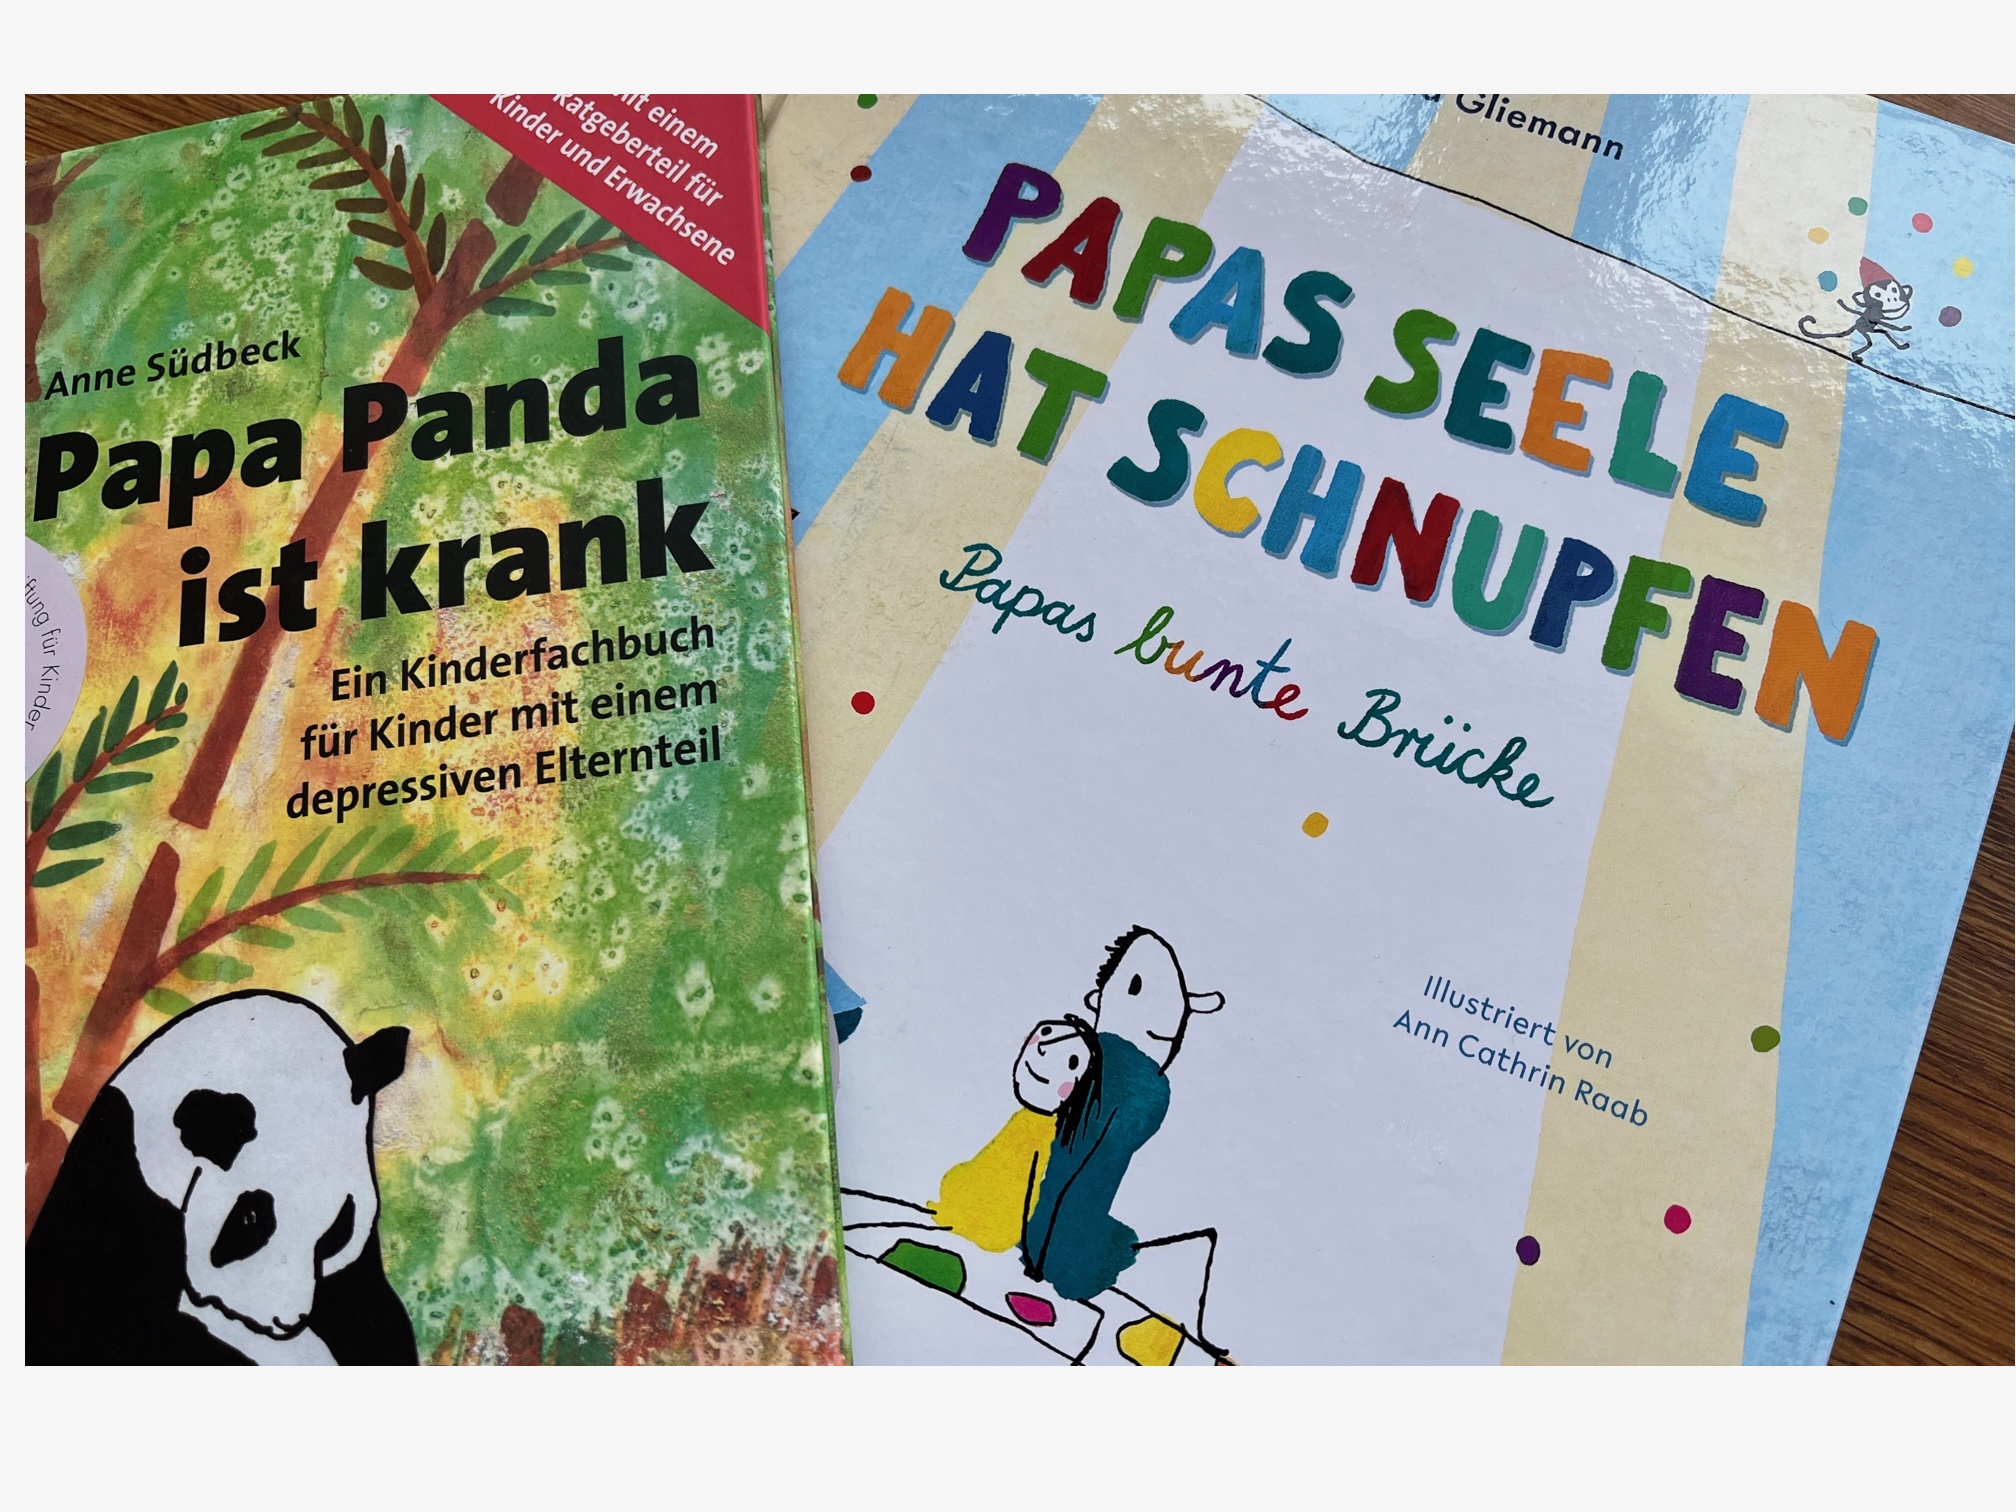 Kindgerechte Bücher zum Thema Depression: "Papa Panda ist krank" und "Papas Seele hat Schnupfen".